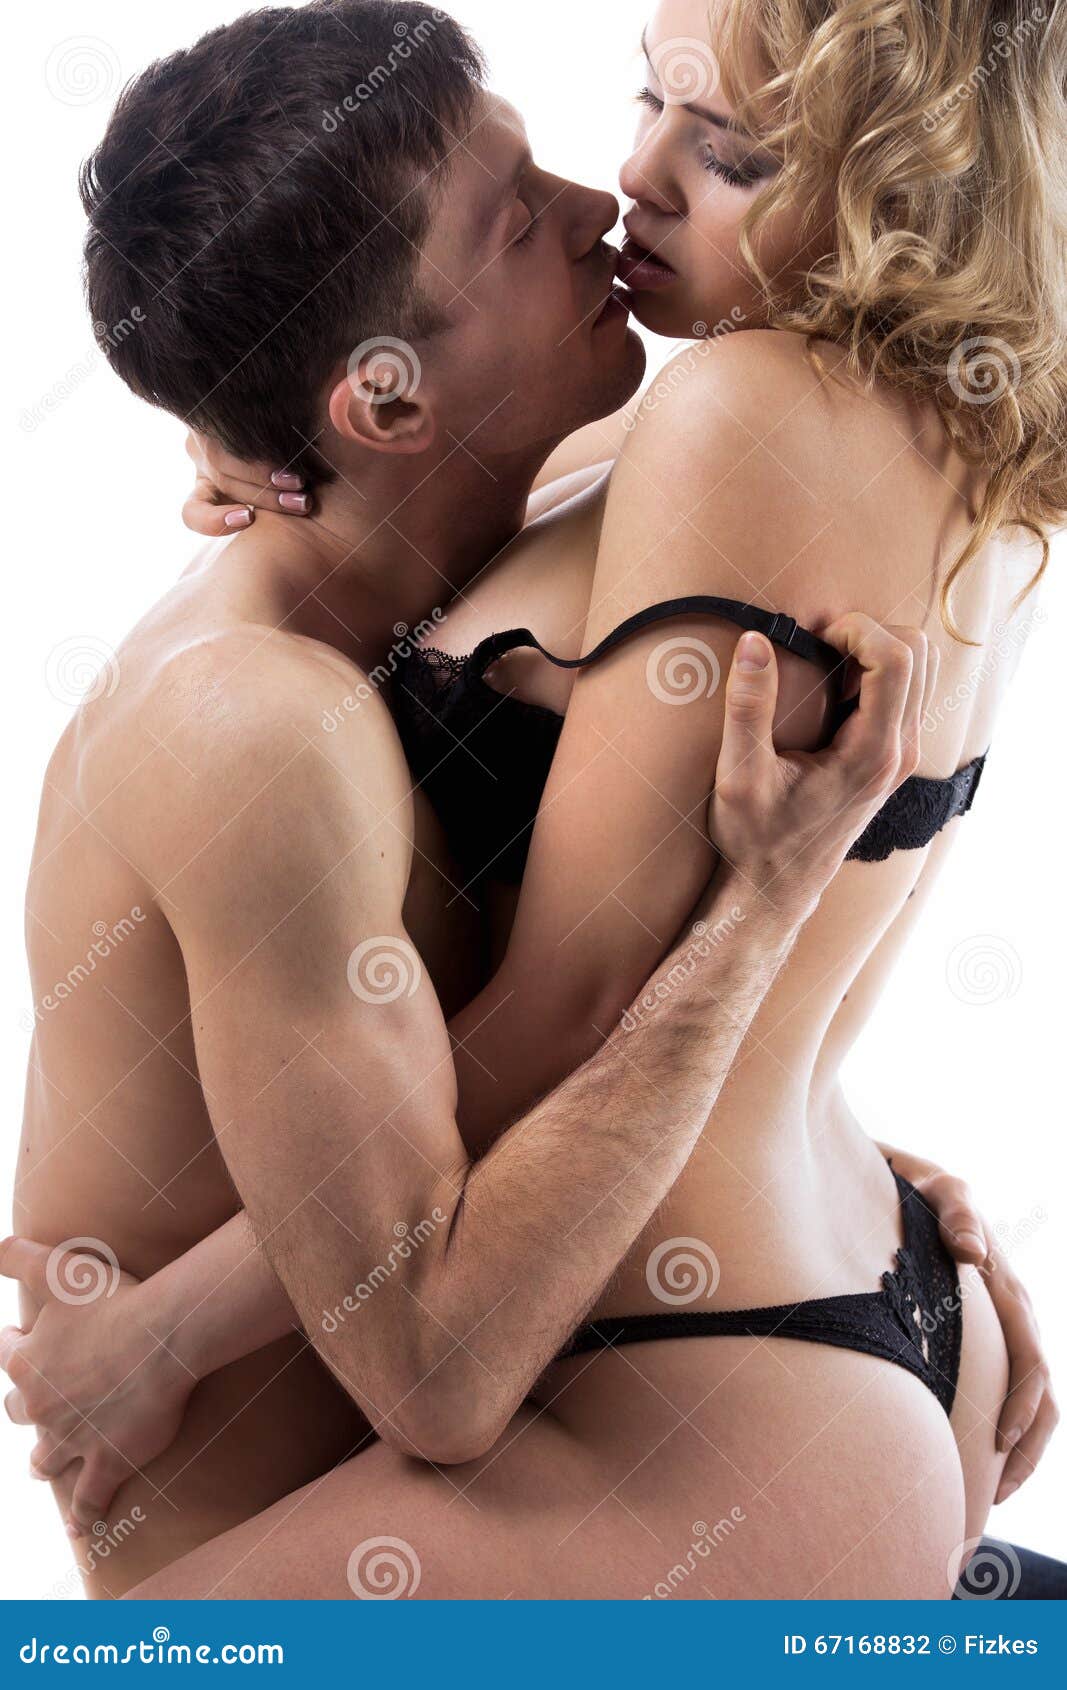 naked teenage boy and girl kissing